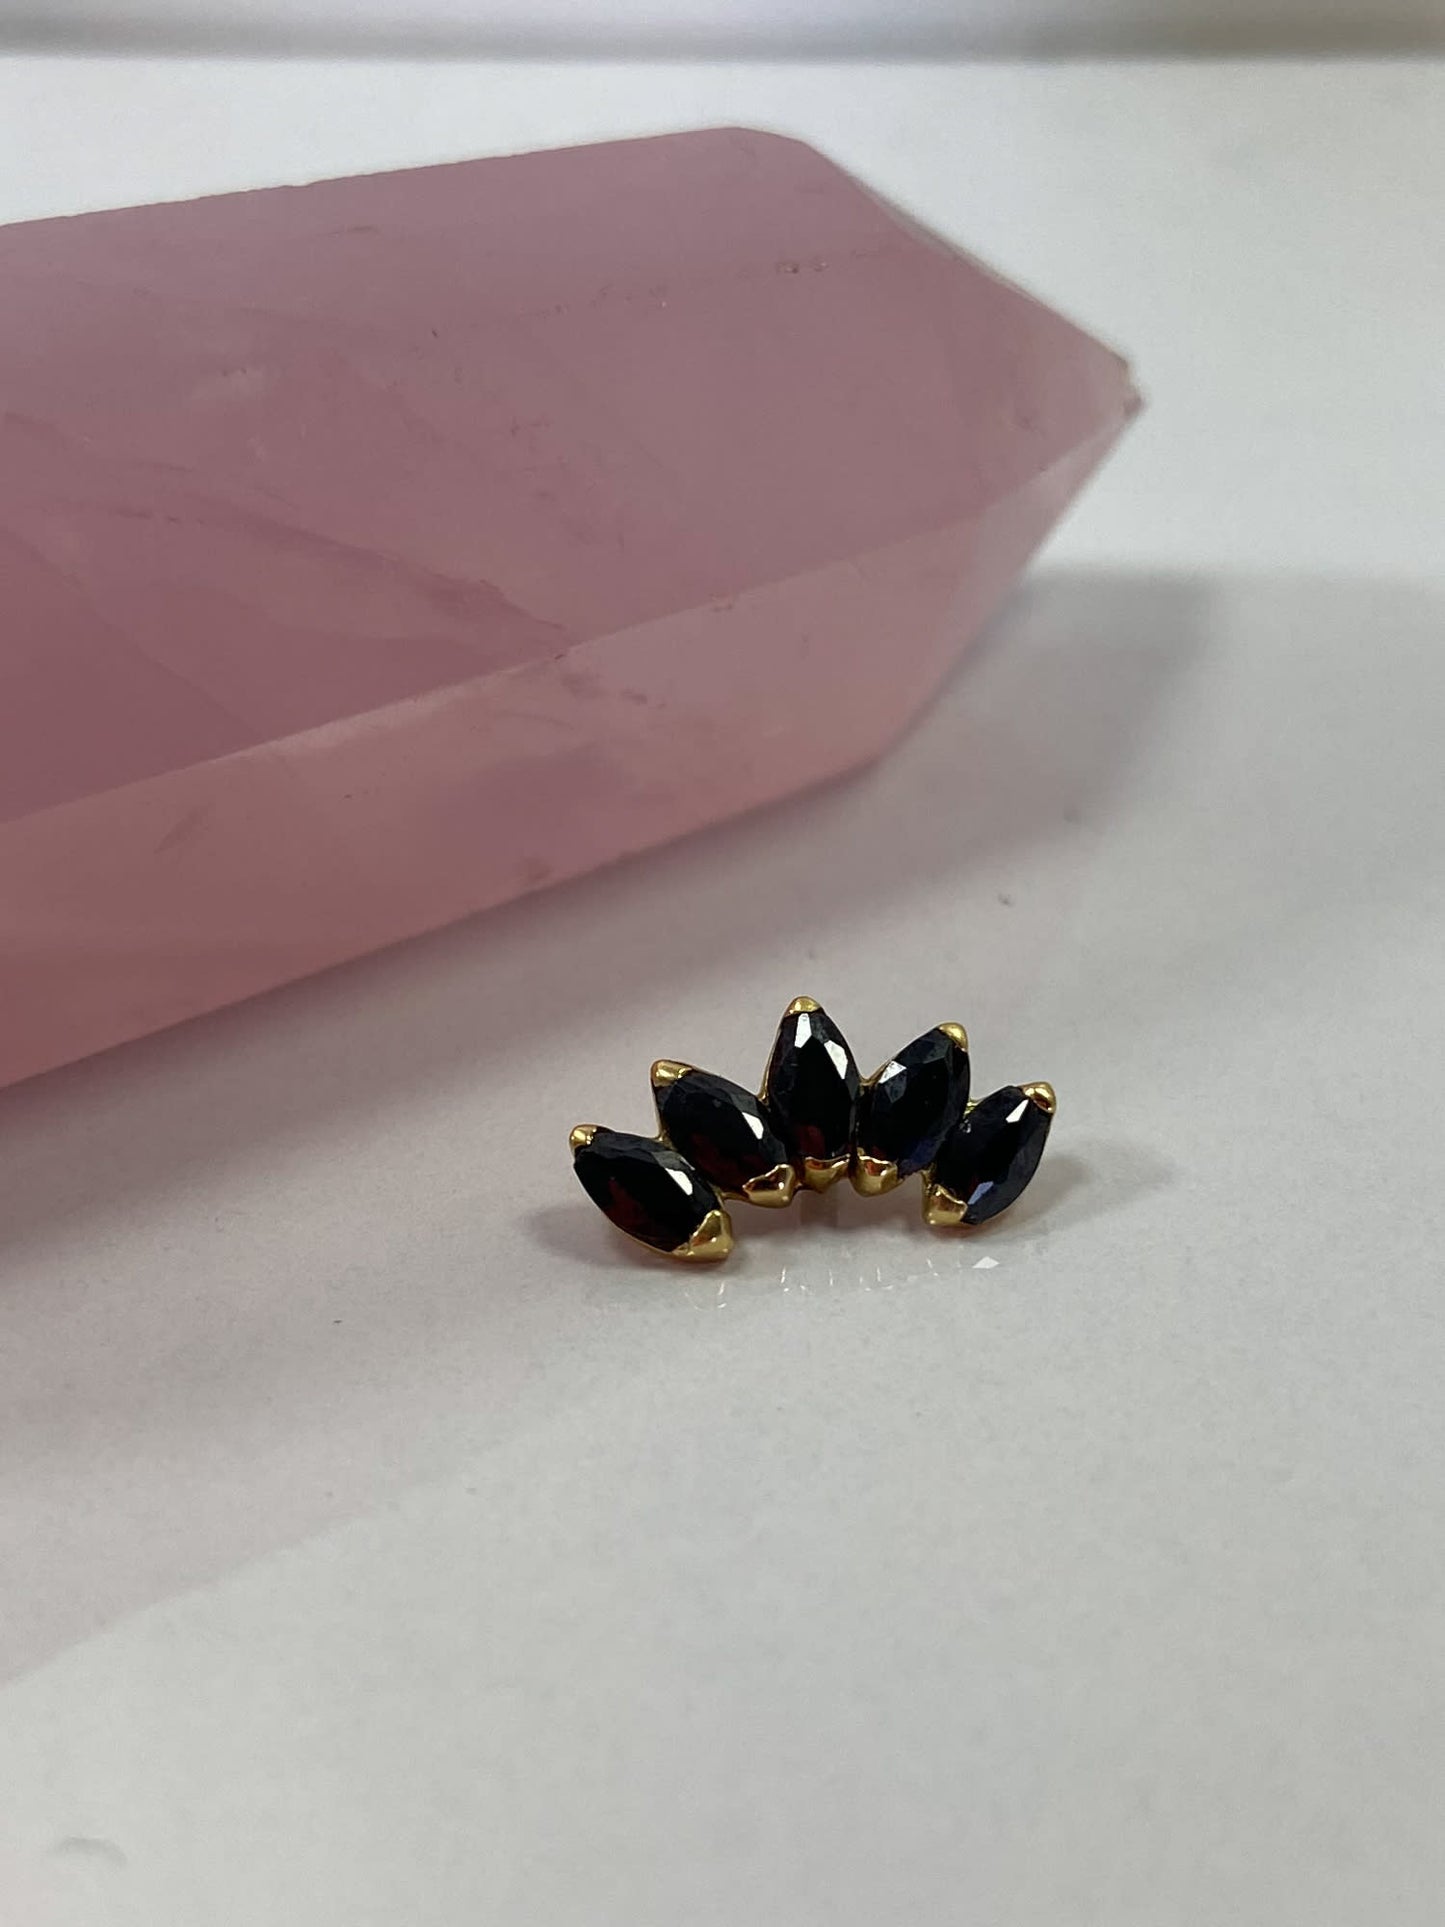 Accesorio con cristales oro 18k c/ rosca - Alana oro 18k - Cluster 5 gemas ovaladas negro